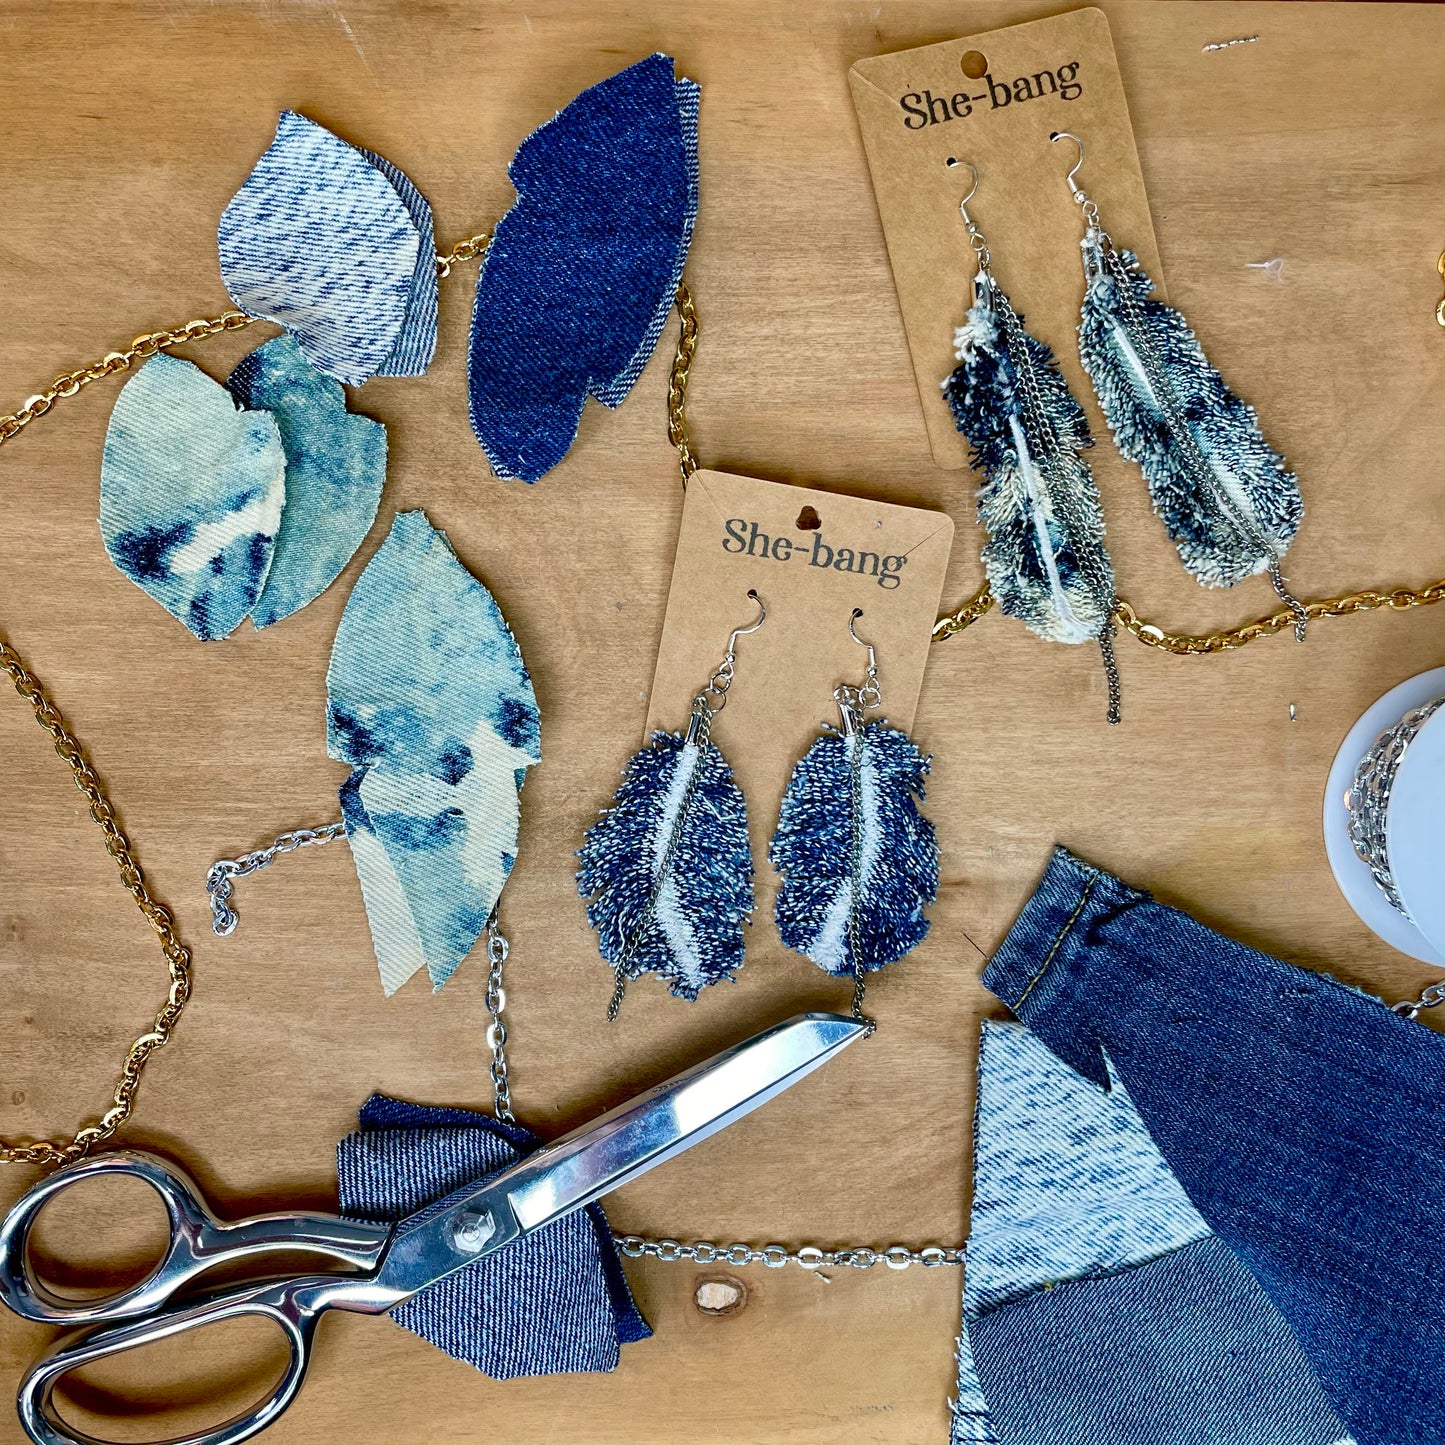 Boho Feather Earrings, tie dye, recycled denim